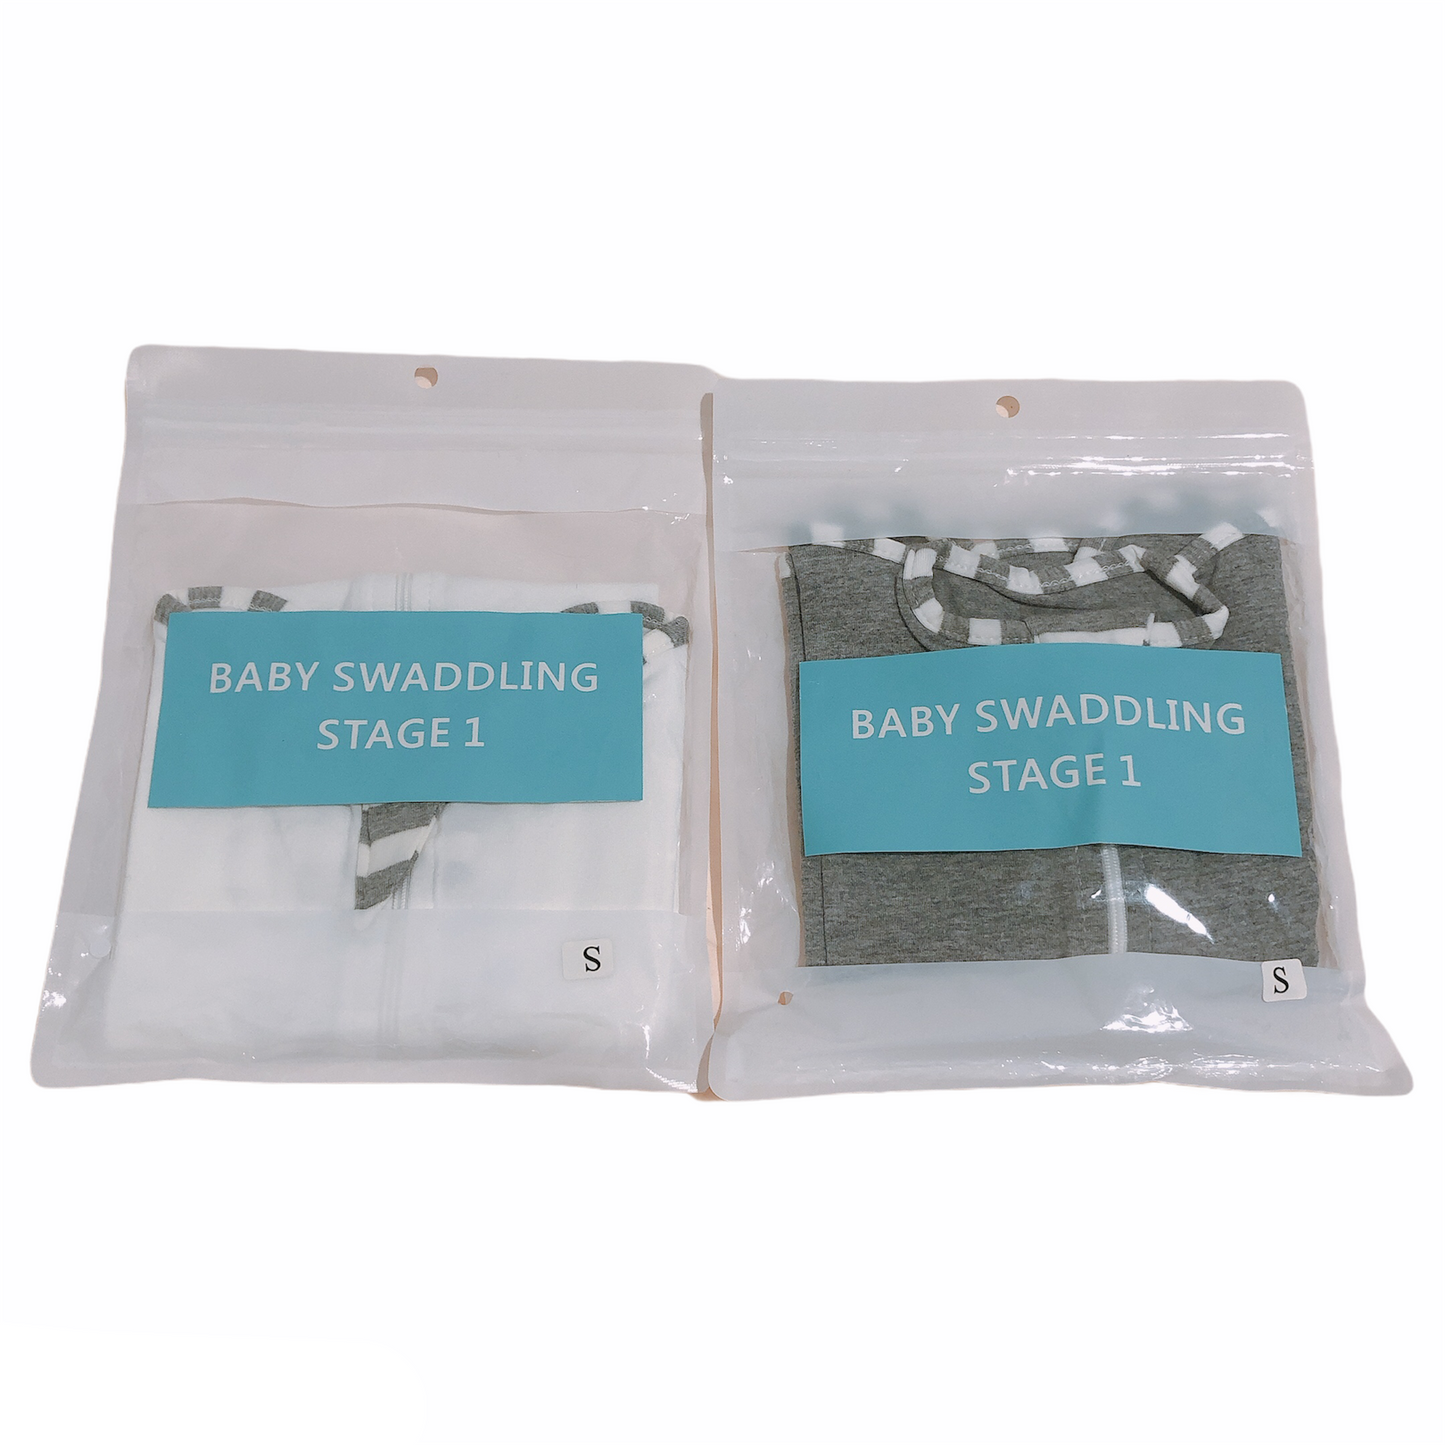 Baby Sleeping Swaddle - 2pcs set (White and Grey)